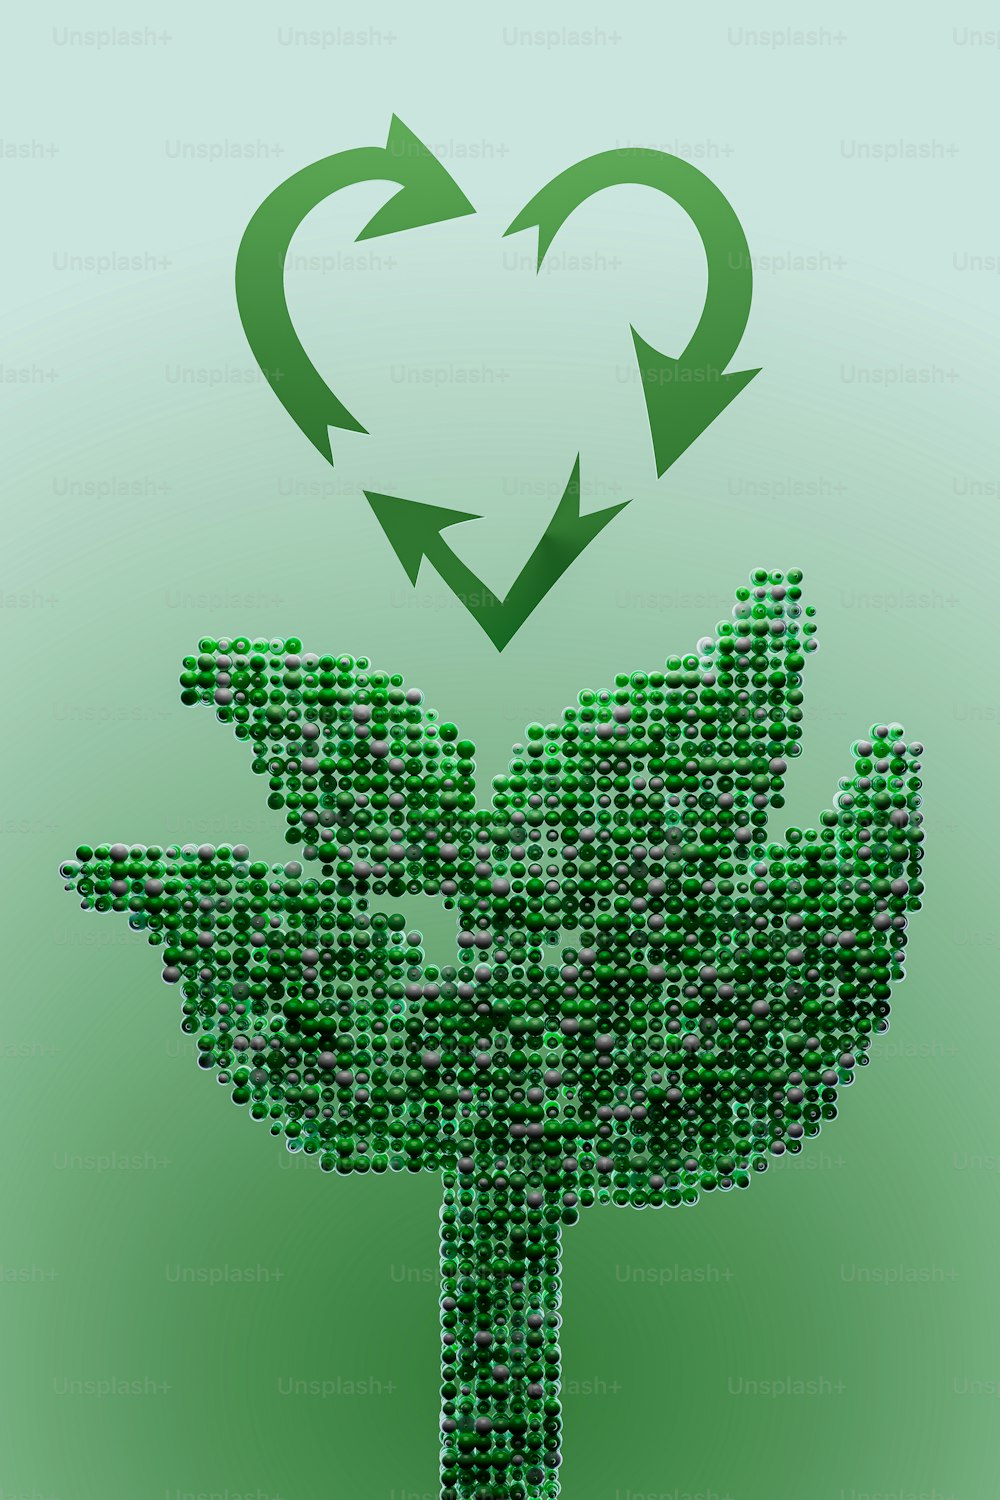 Un'immagine di una pianta verde con una freccia a forma di cuore